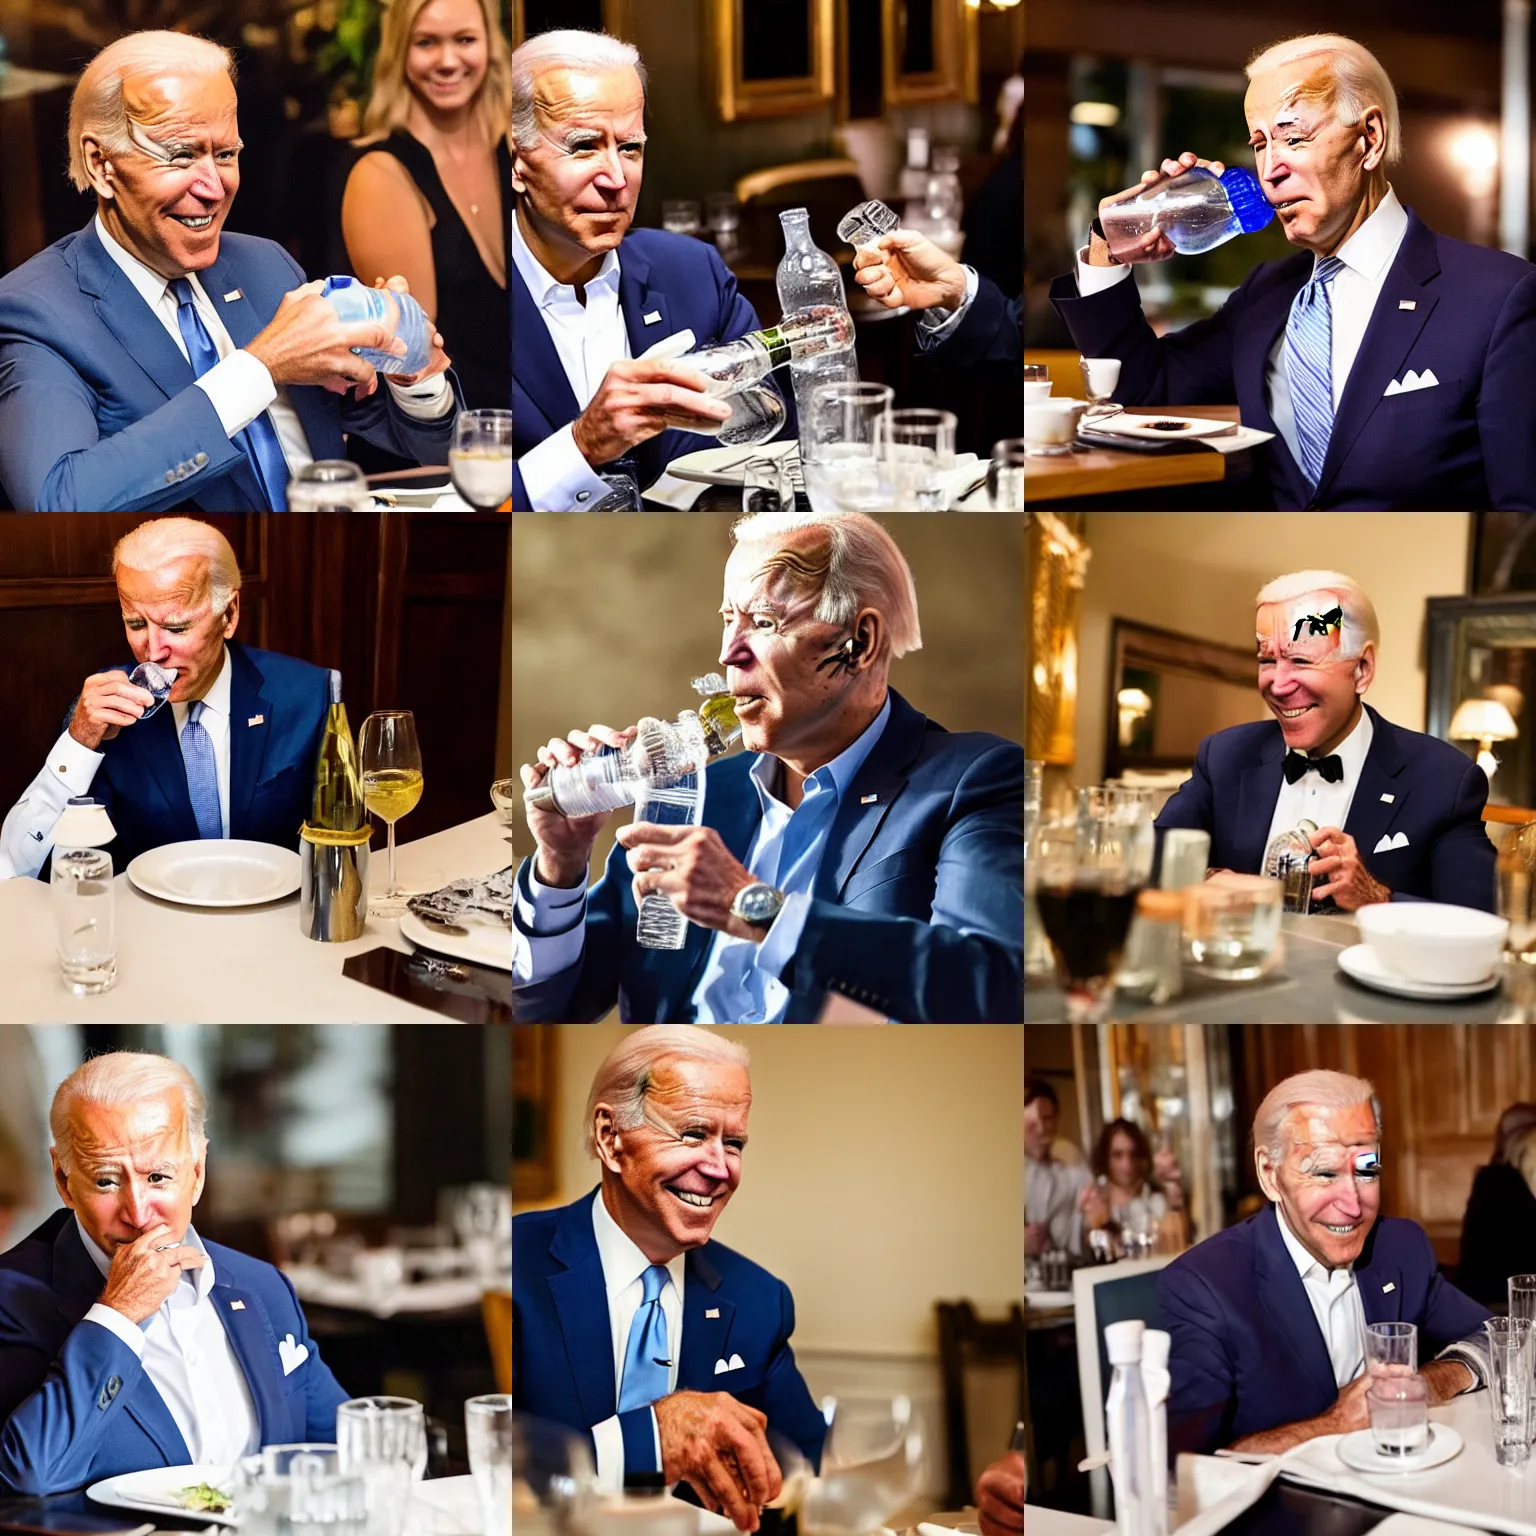 Prompt: Joe Biden drinking out of a water bottle in an fancy restaurant